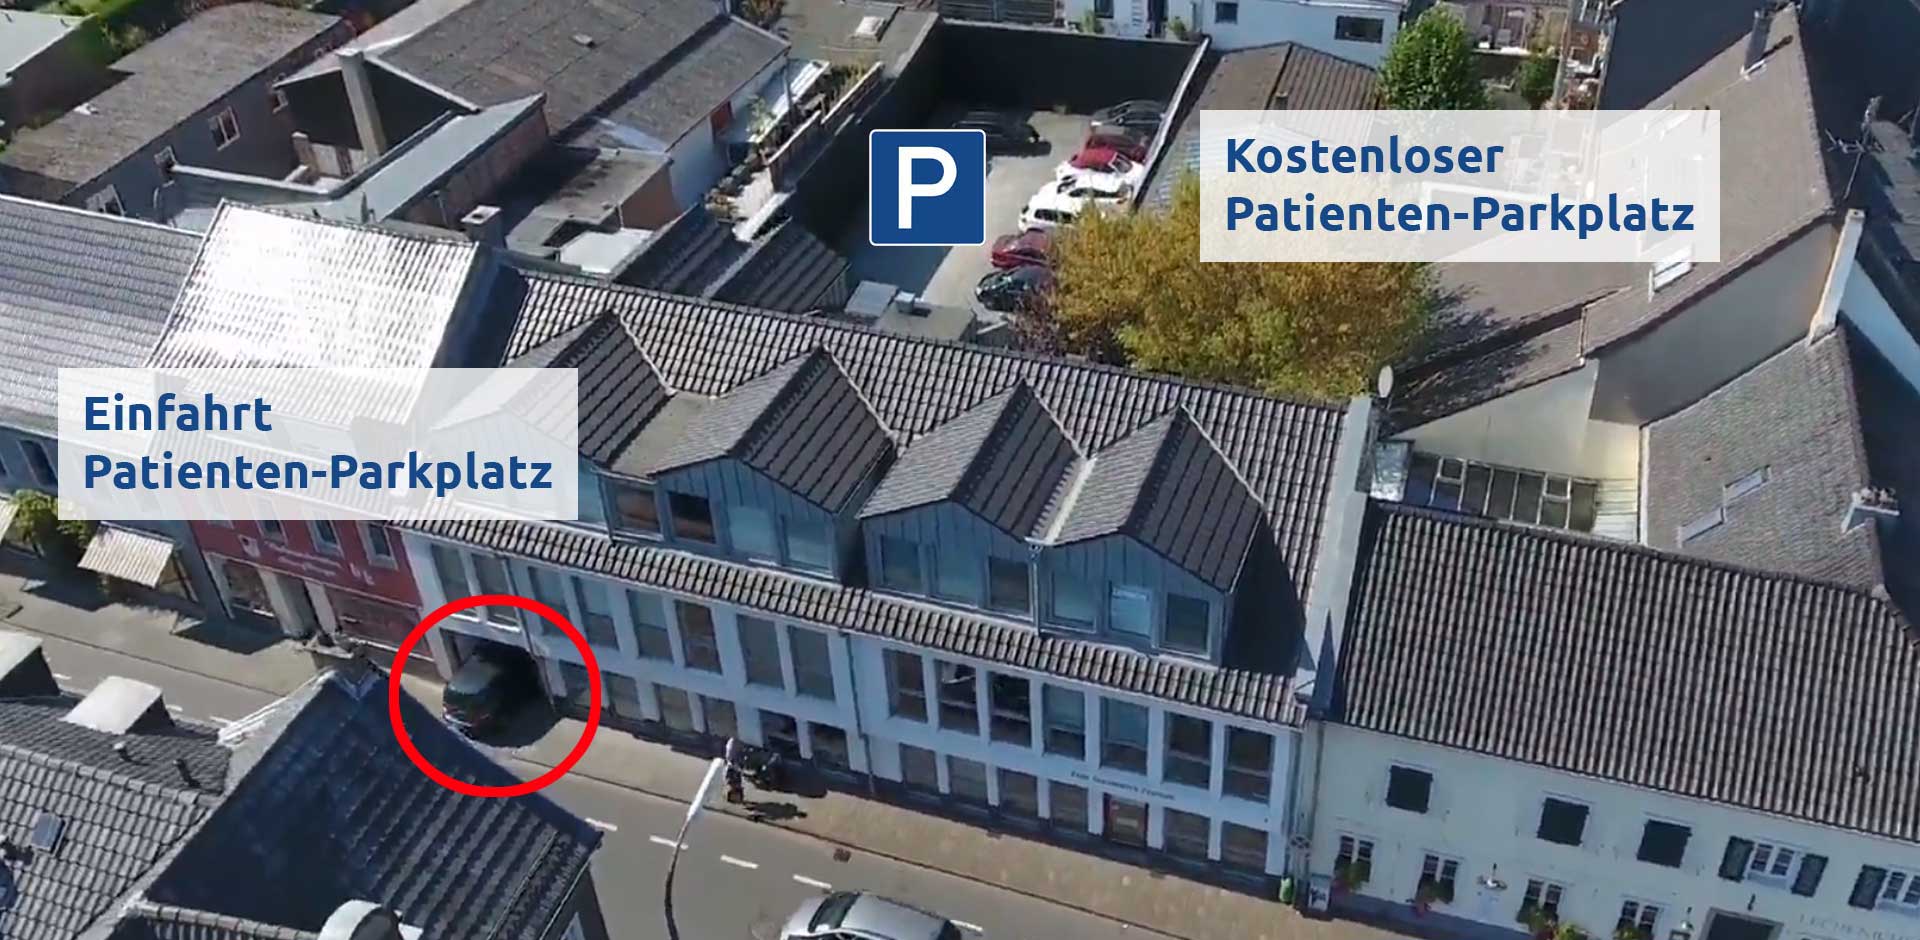 Kostenloser Patientenparkplatz hinter dem Zahn-Gesundheitszentrum Rhein-Erft